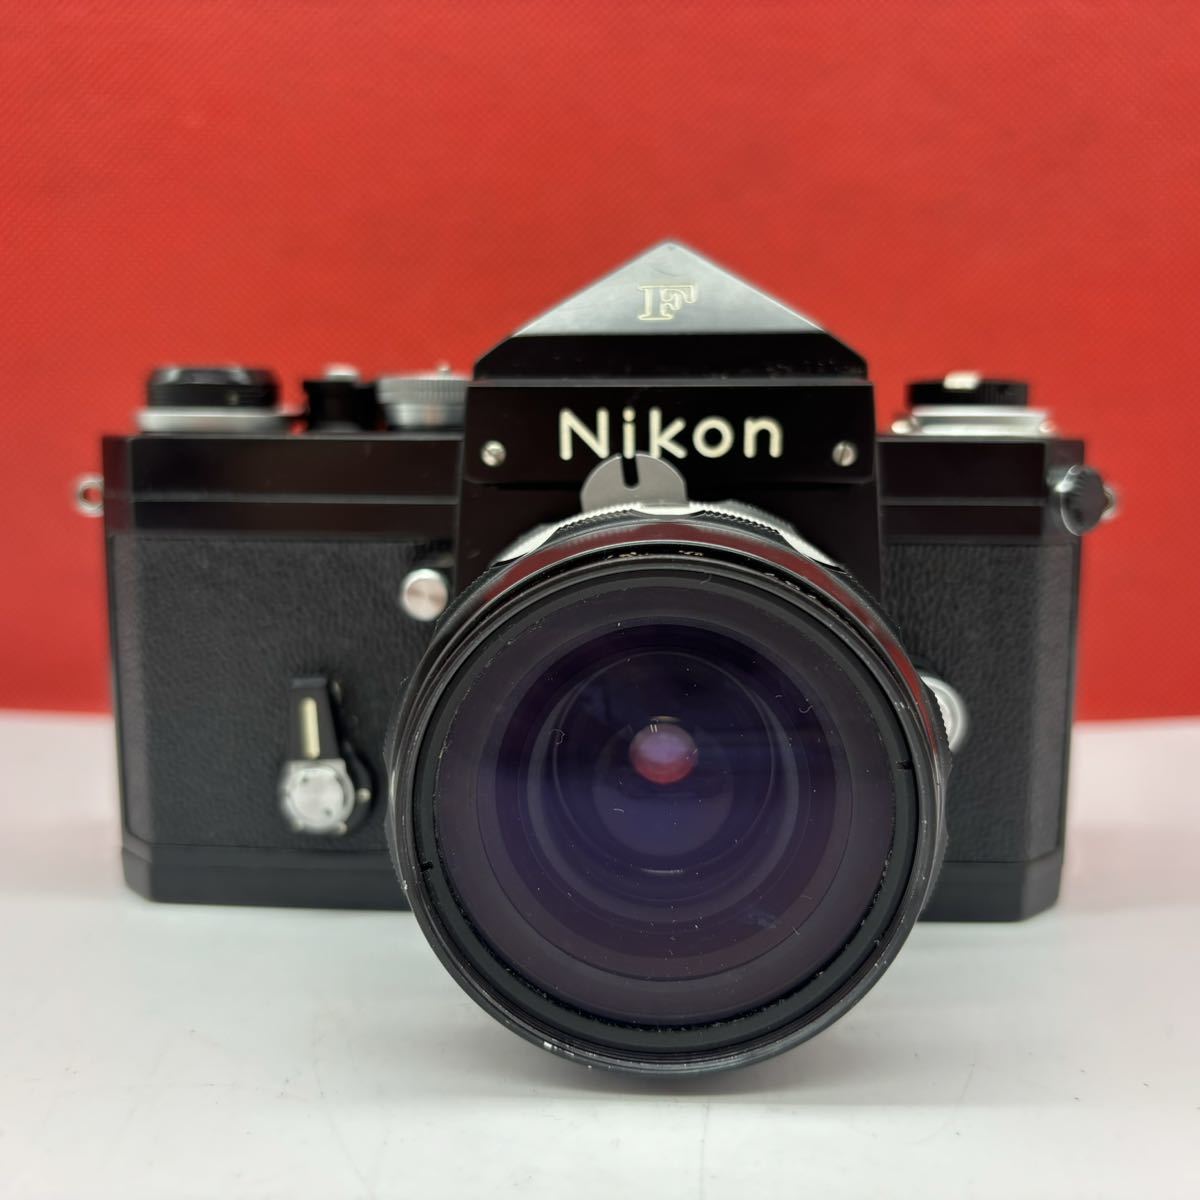 売る ◇ Nikon F アイレベル フィルムカメラ 一眼レフカメラ ボディ